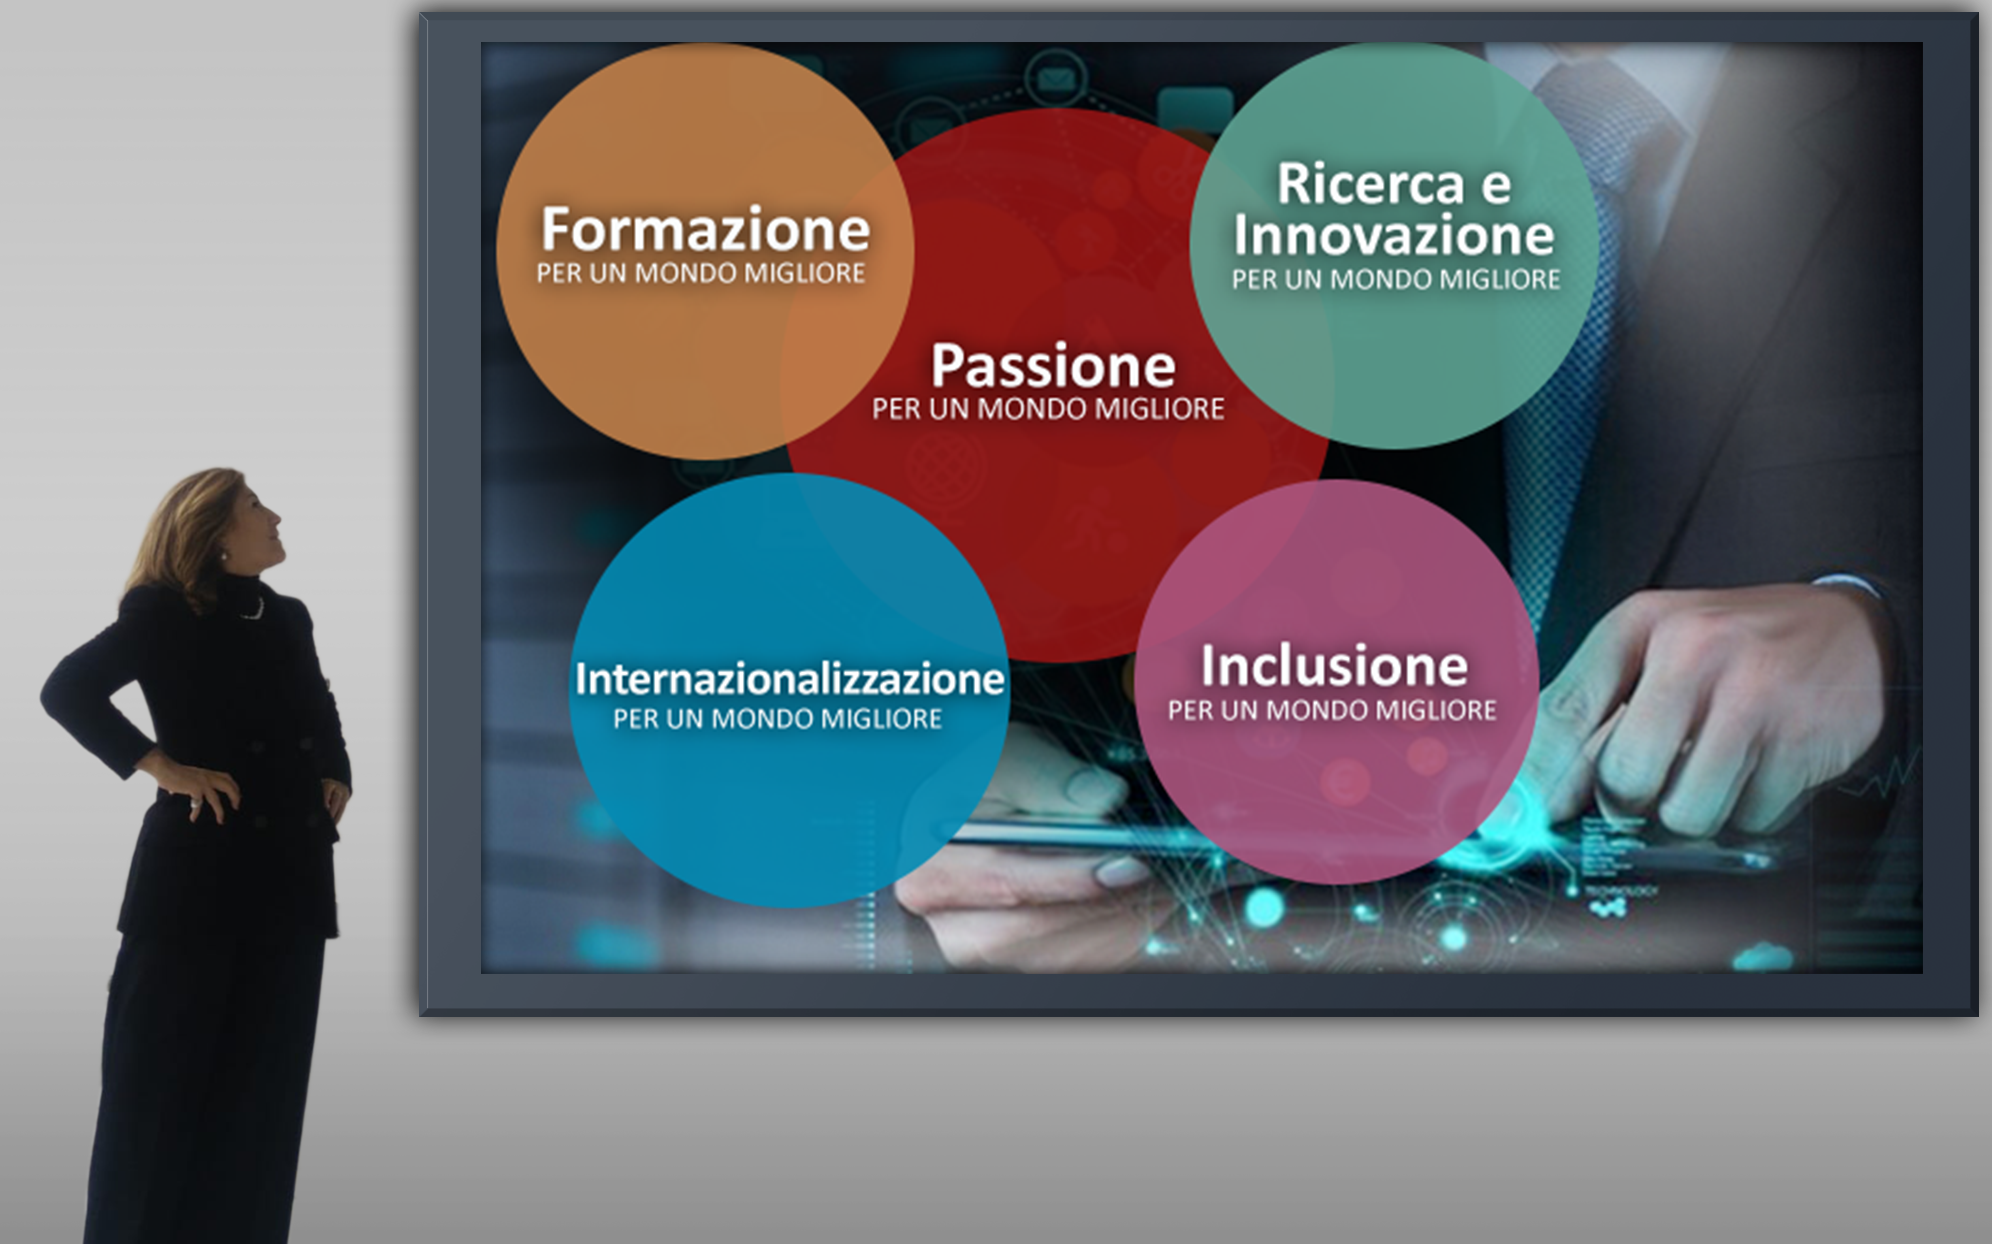 Formazione, Ricerca e Innovazione, Internazionalizzazione, Inclusione, Passione